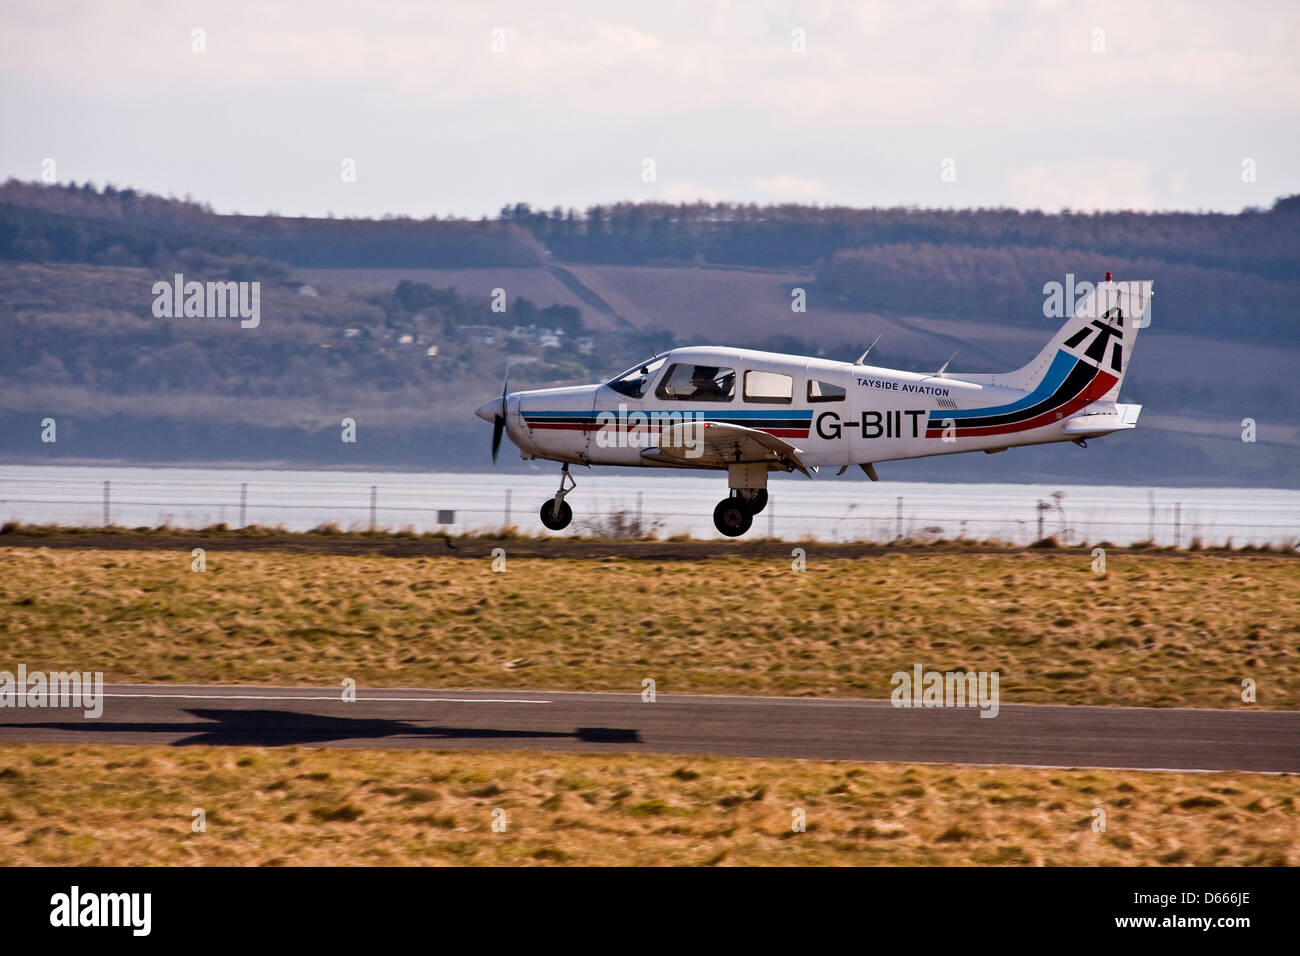 Tayside Aviation Piper PA-28 Warrior G-BIIT aerei di atterraggio sulla pista a Dundee aeroporto,REGNO UNITO Foto Stock